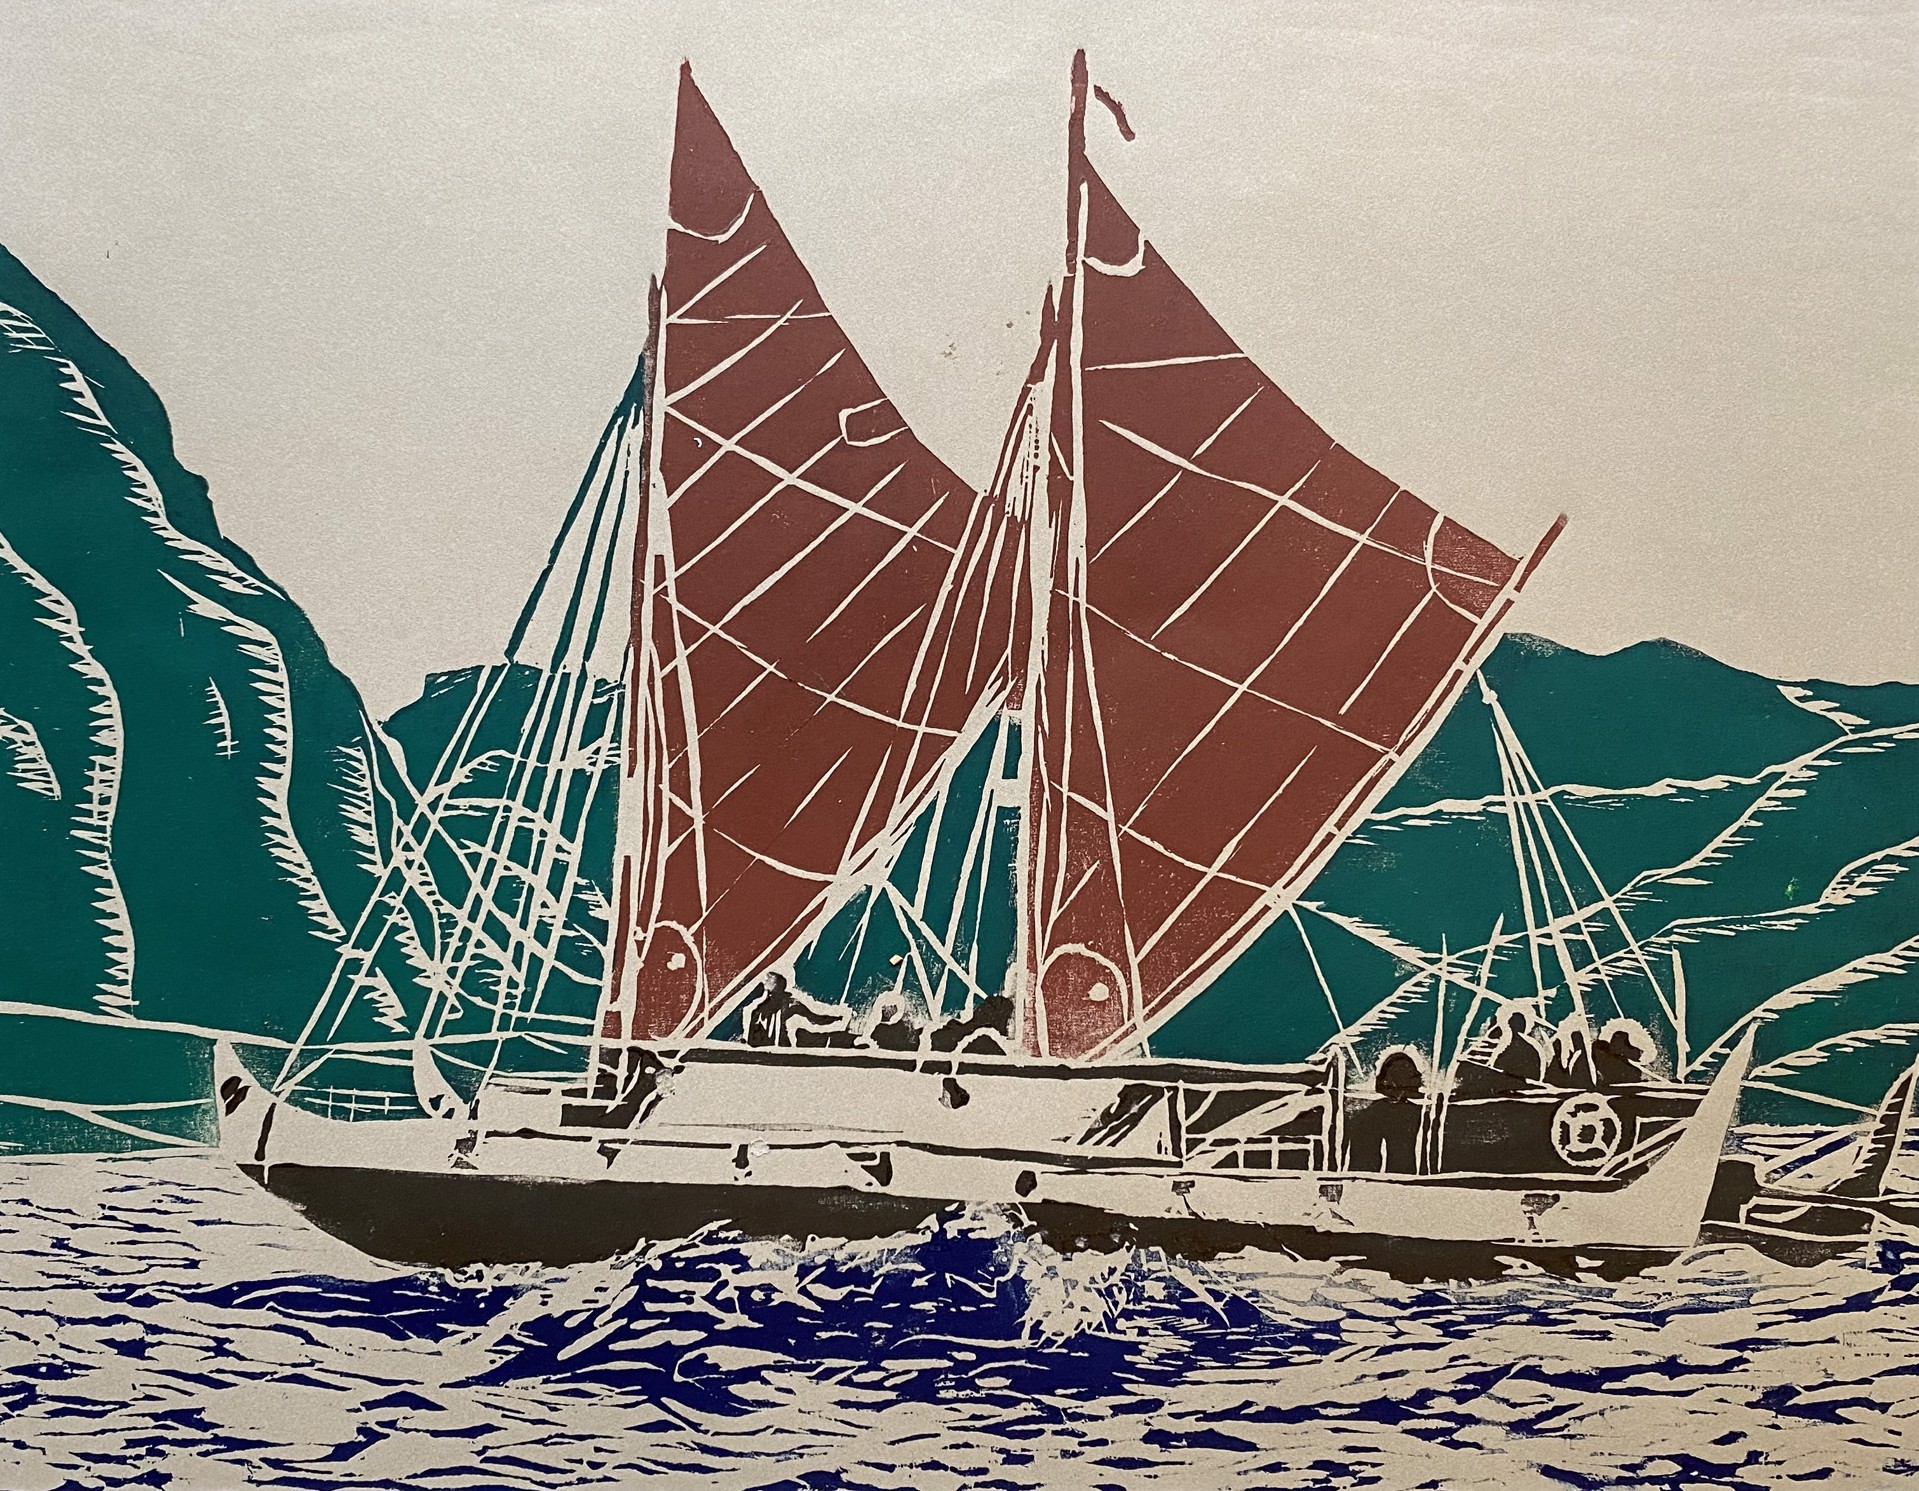 Hōkūleʻa by Dieter Runge